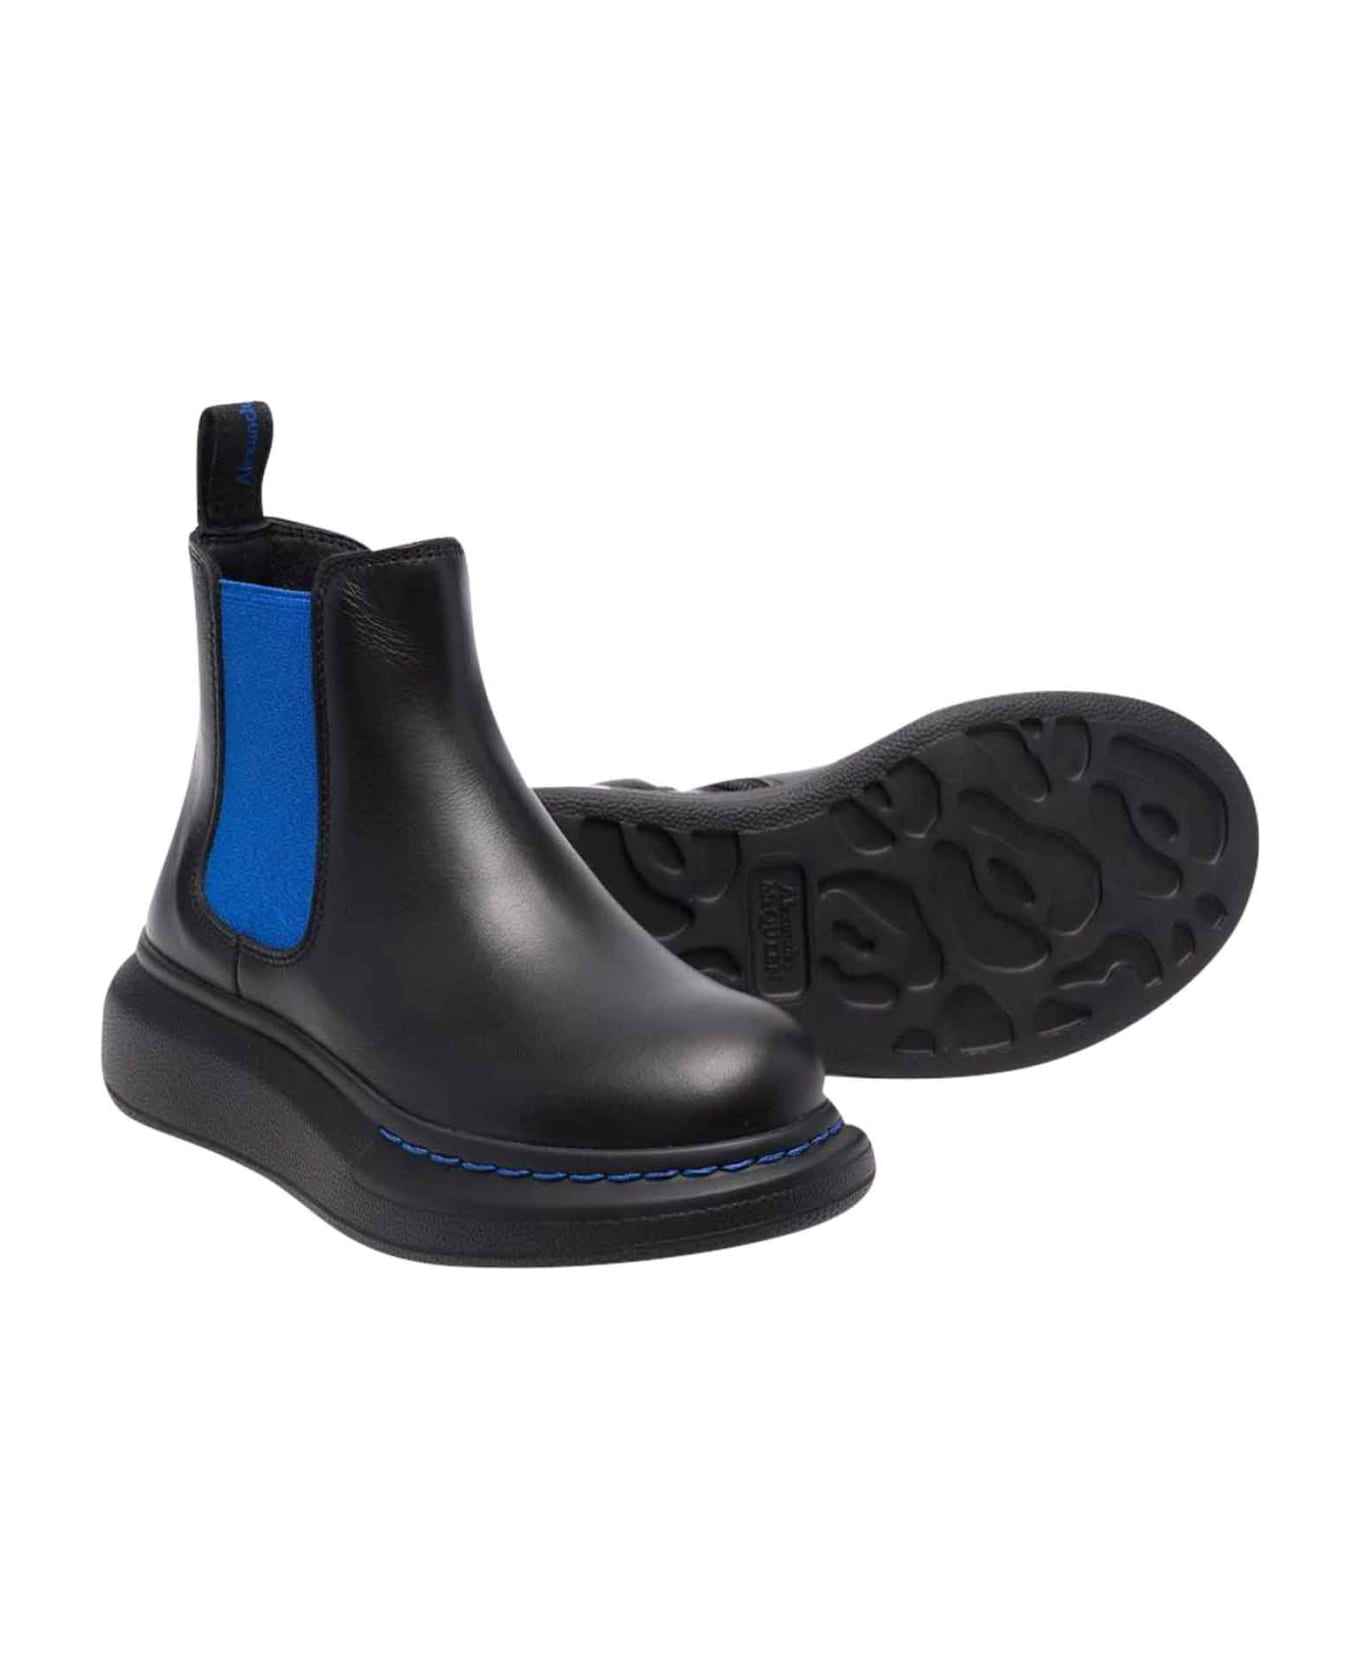 Alexander McQueen Black / Blue Boots Unisex - Nero/blu